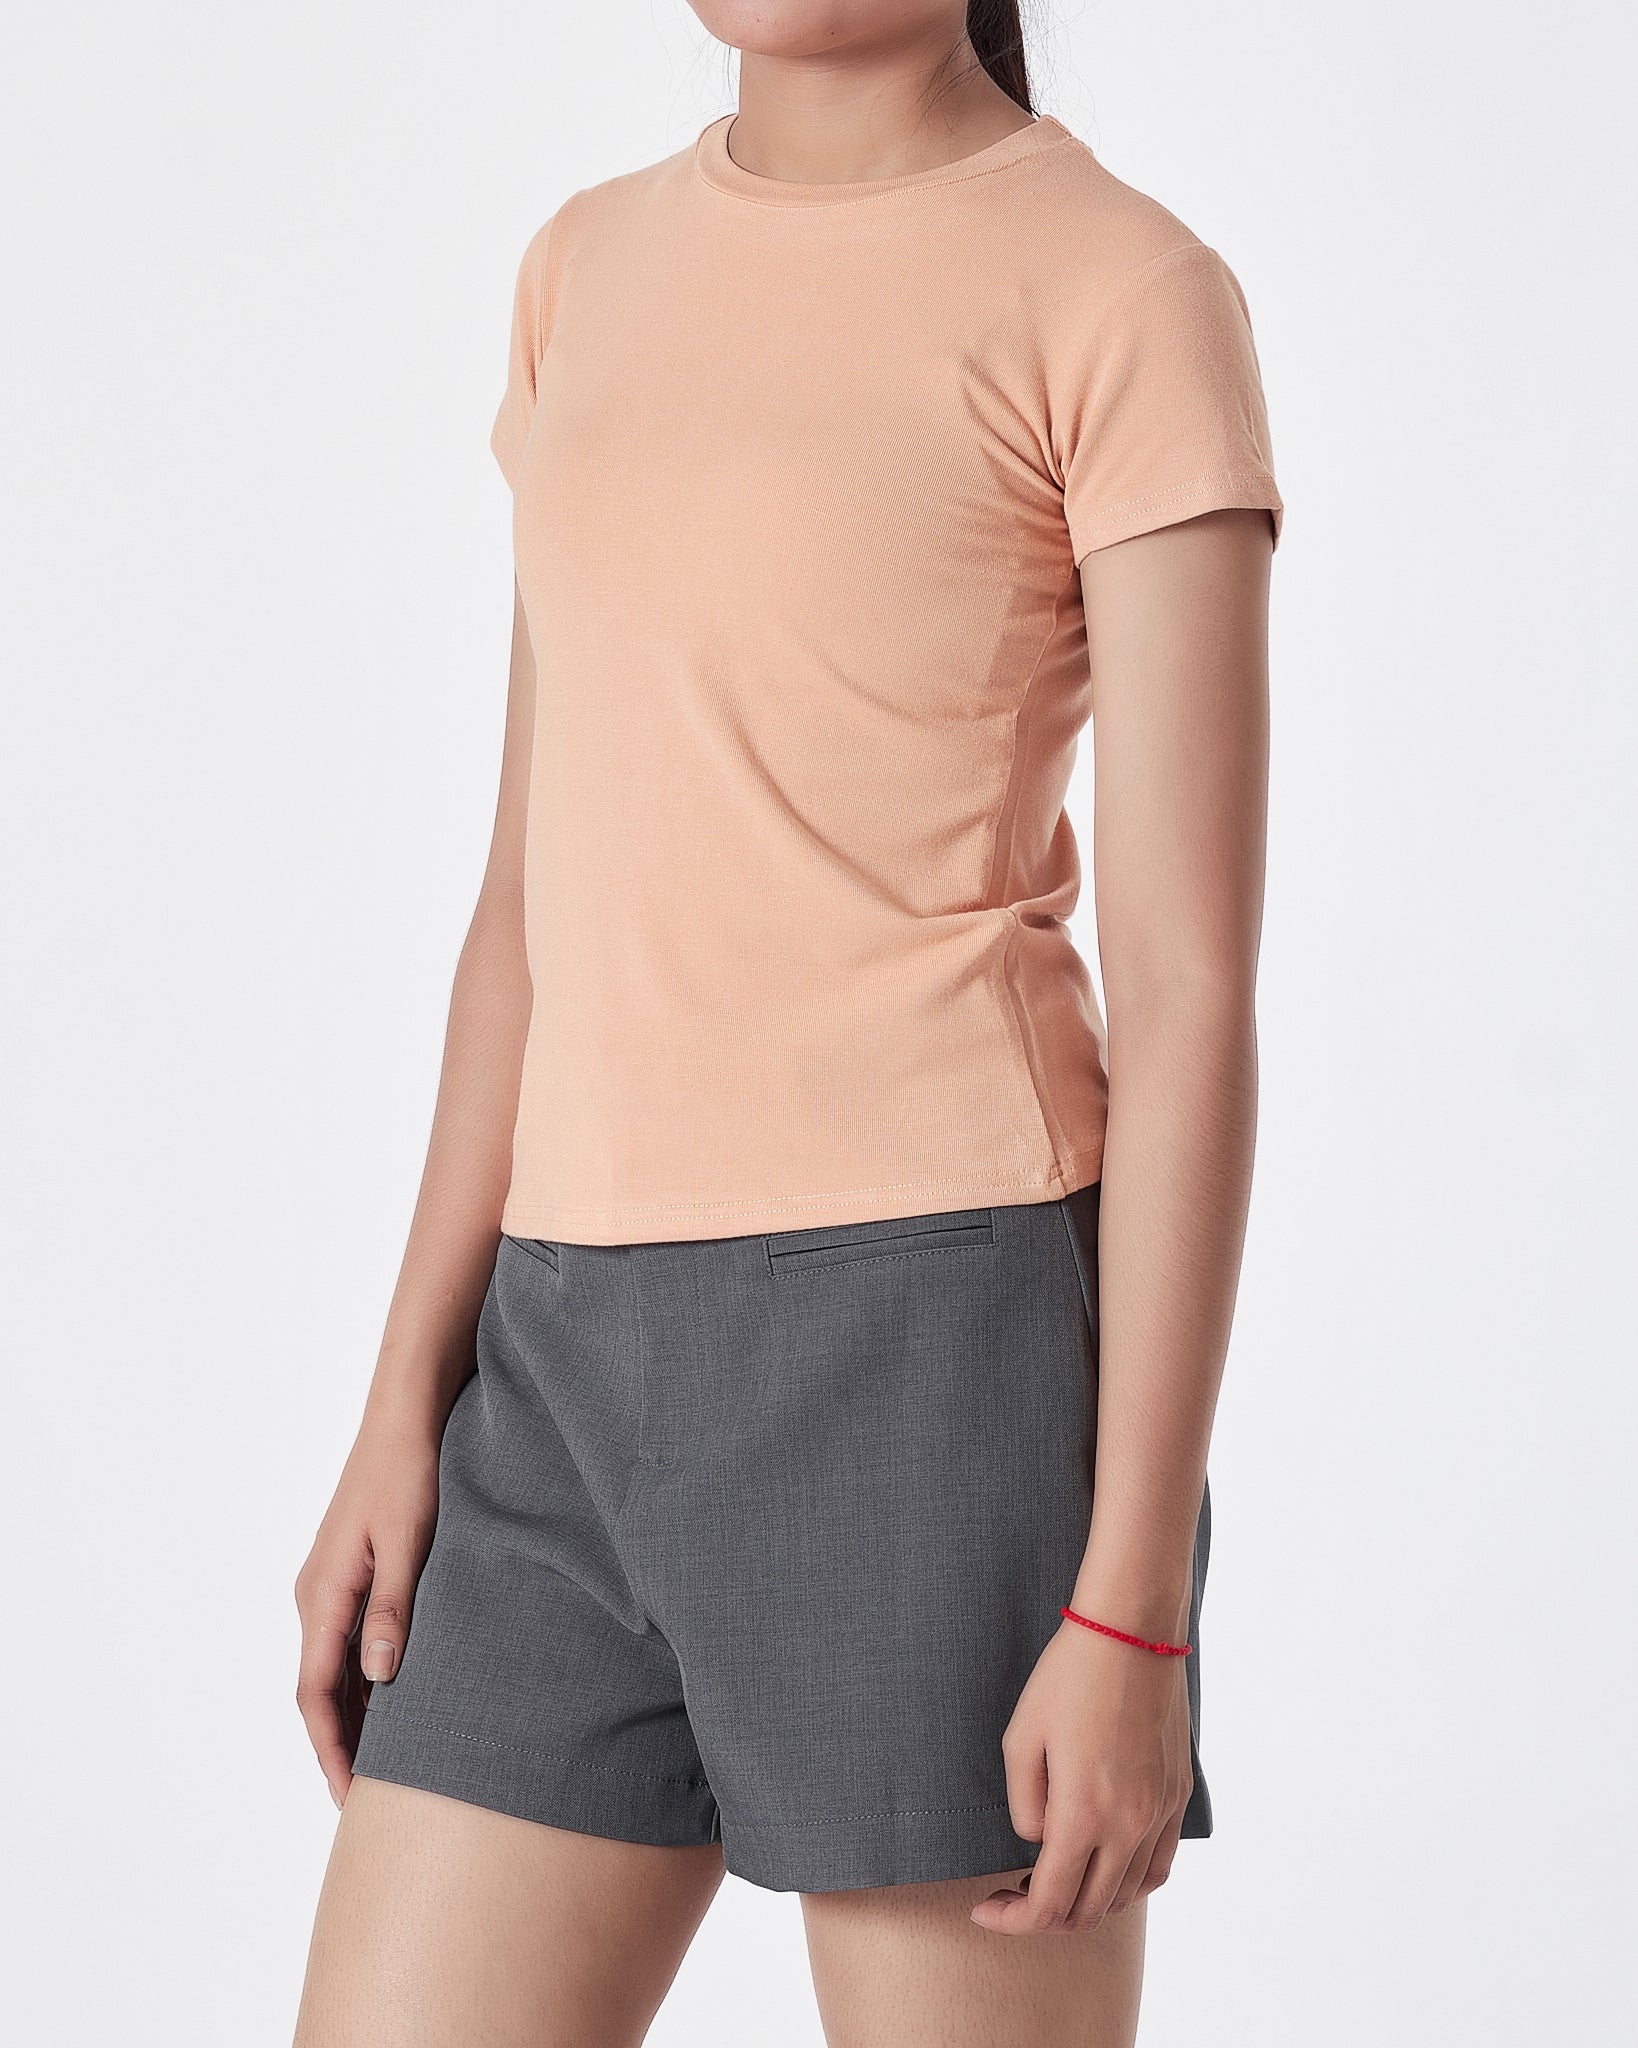 Plain Color Lady Brown T-Shirt 11.90